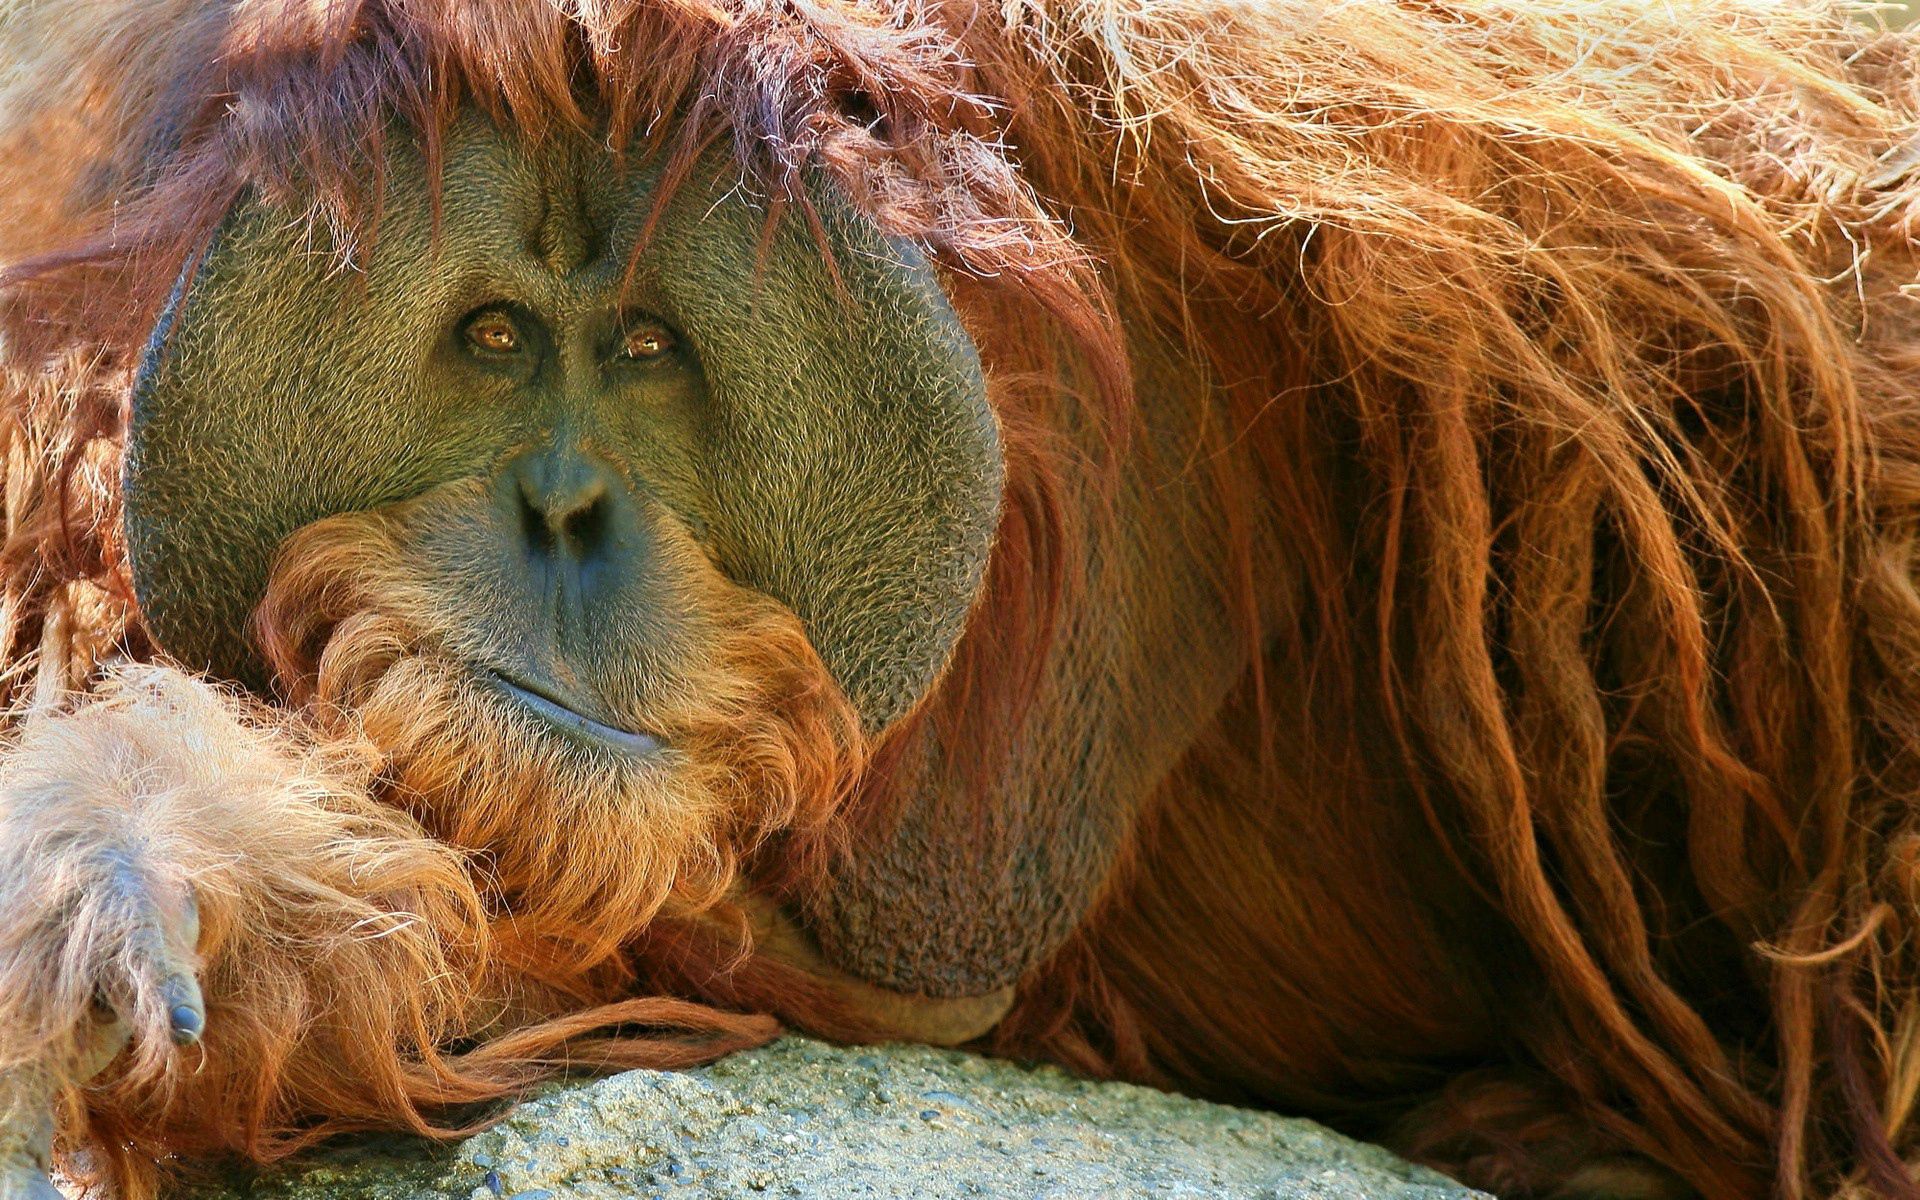 orangutan, animals, monkey, pensive